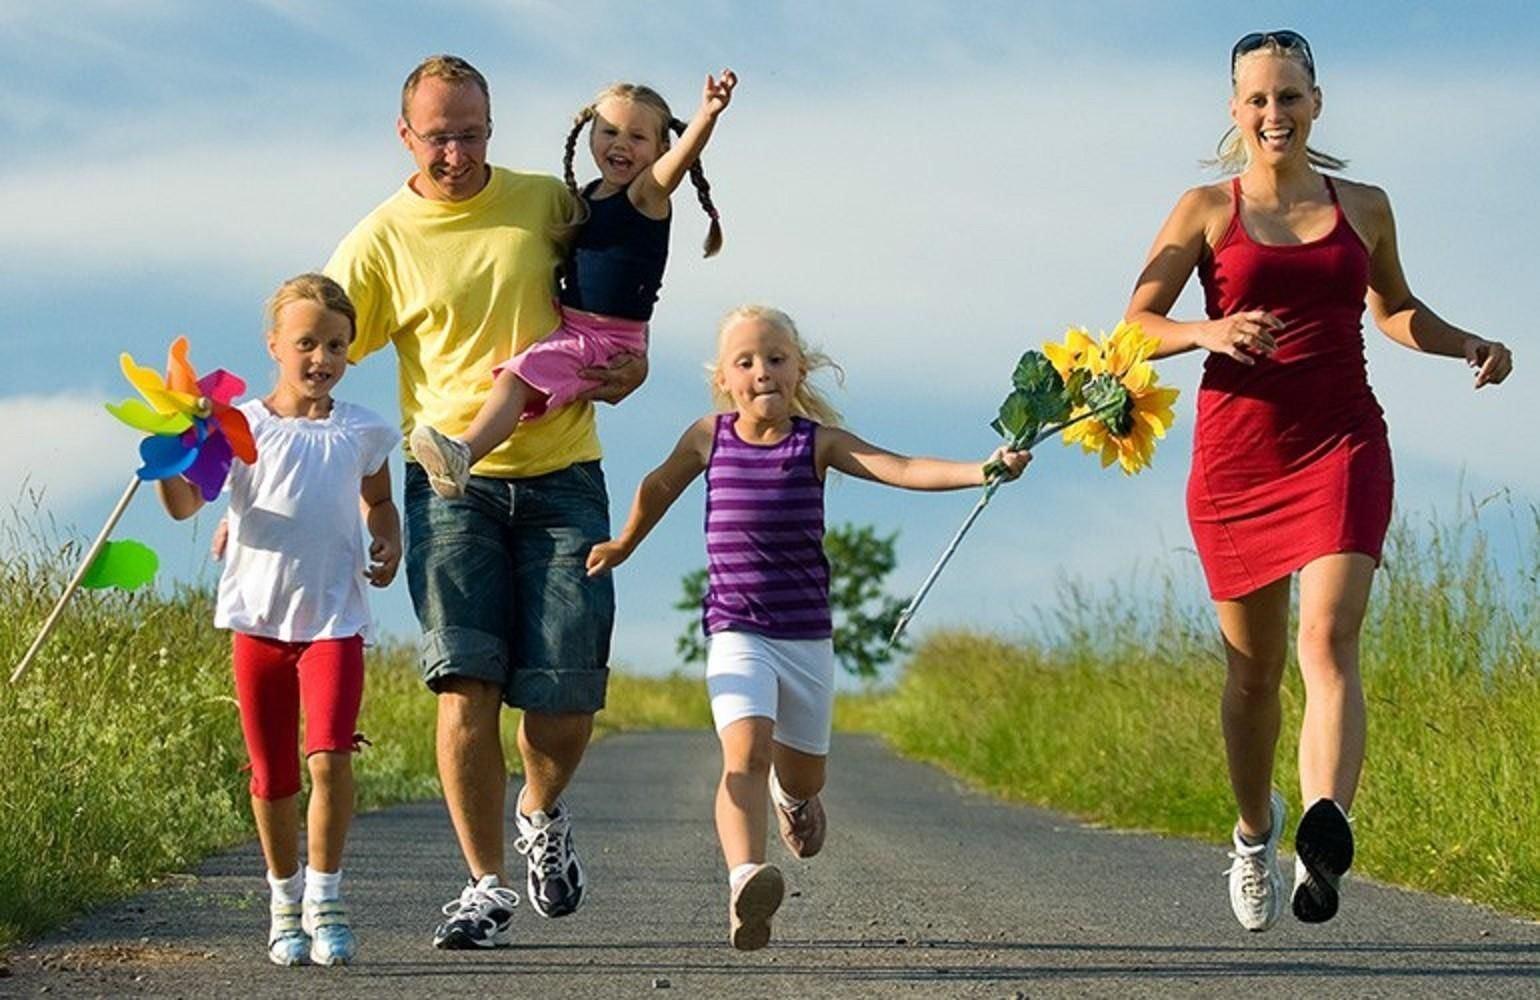 Жить со всеми и для всех. Здоровый образ жизни. Спортивная семья. Активный и здоровый образ жизни. Спортивная семья с детьми.